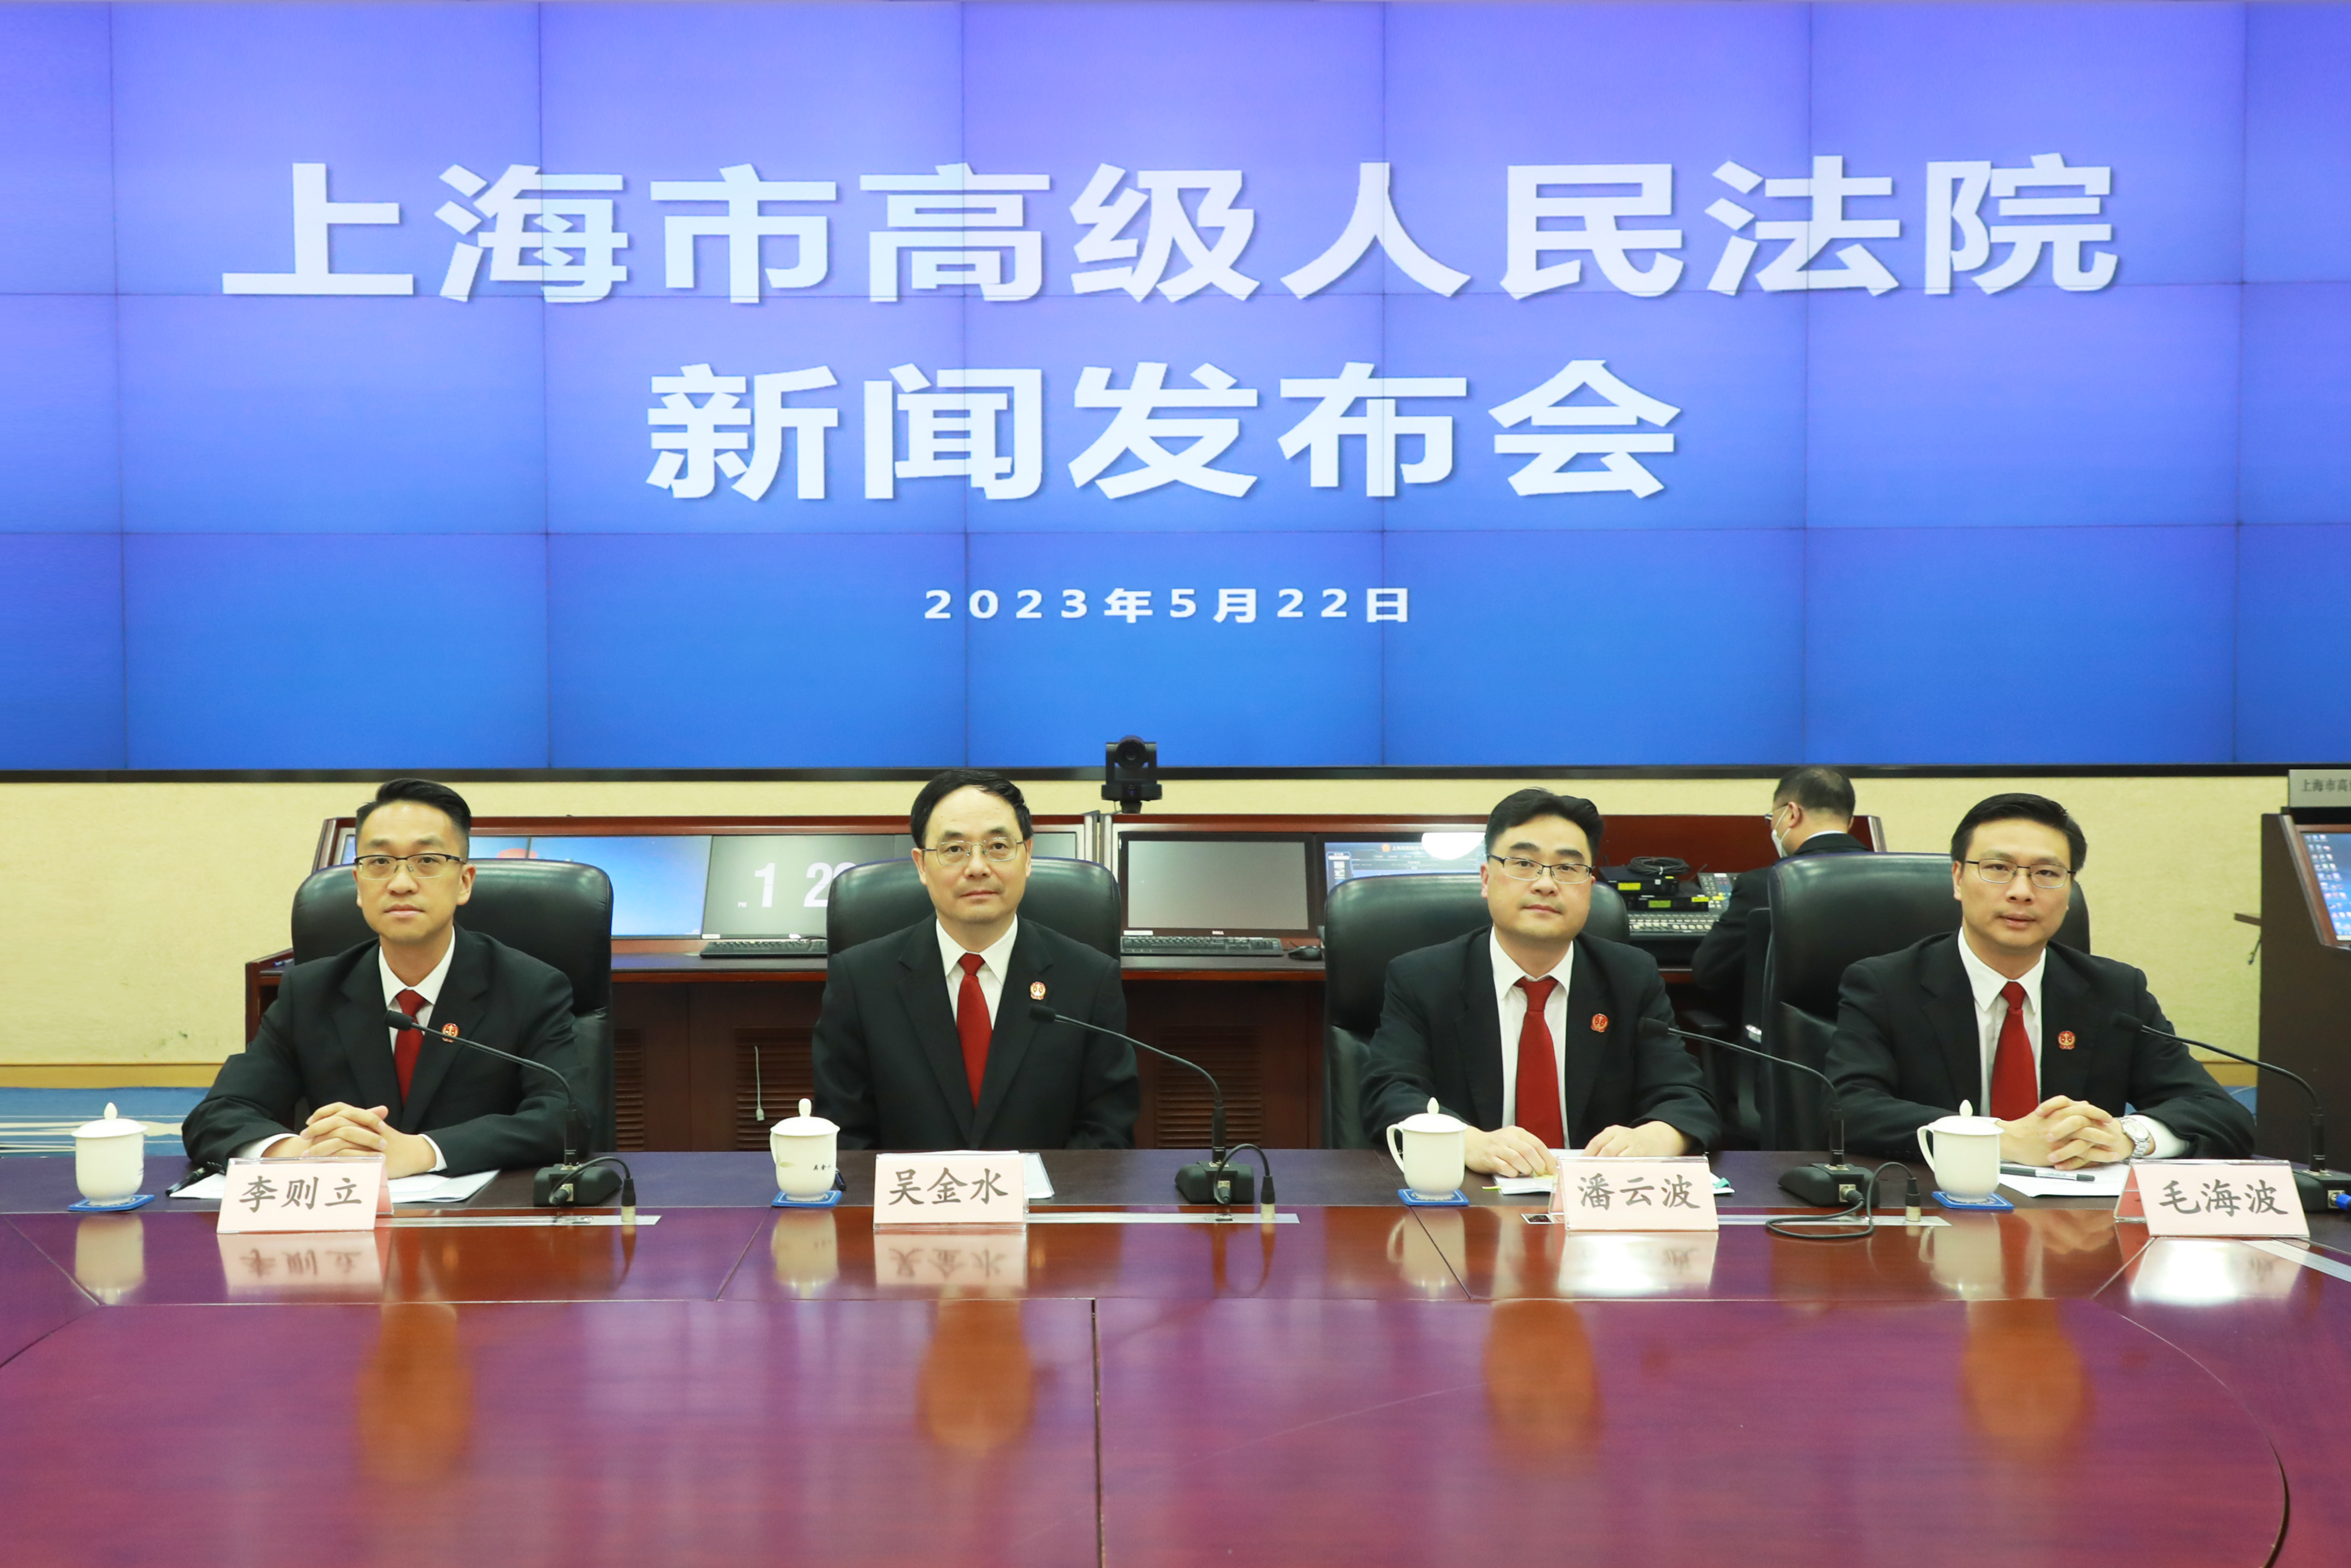 上海高院發佈推進法治化營商環境建設專項行動計劃6.0版